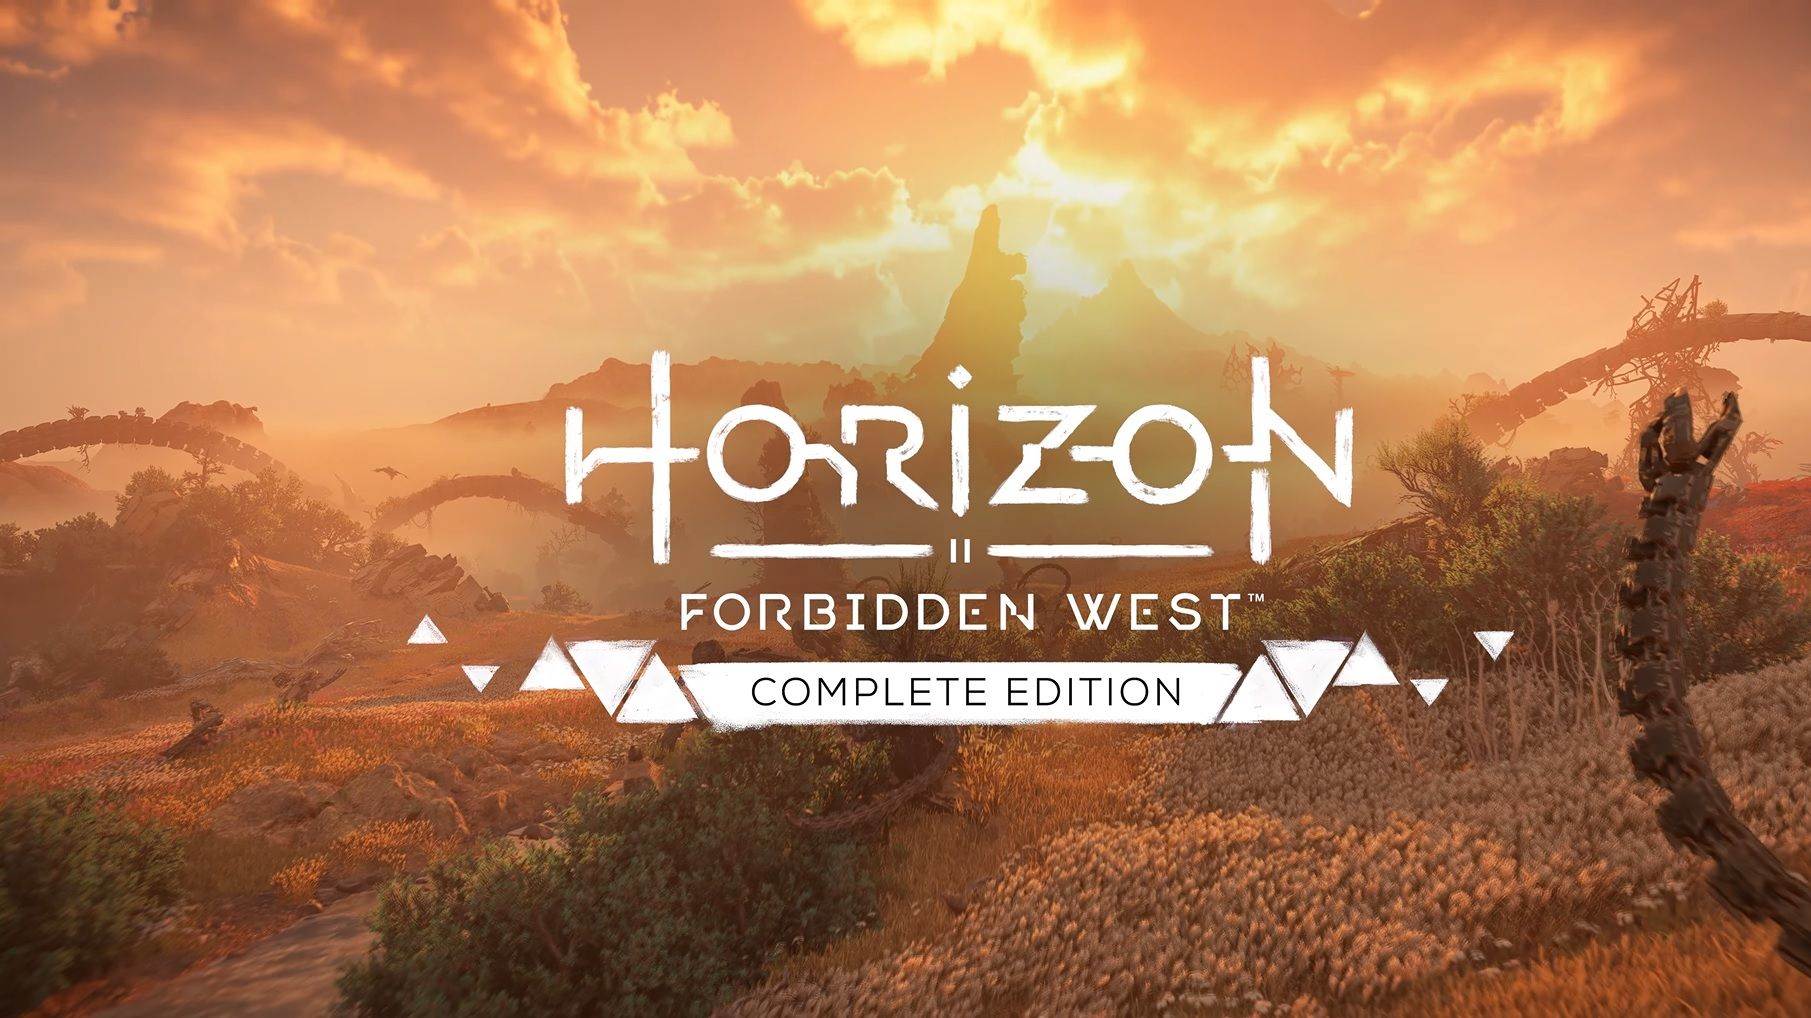  Horizon Forbidden West Complete Edition (3).jpg 